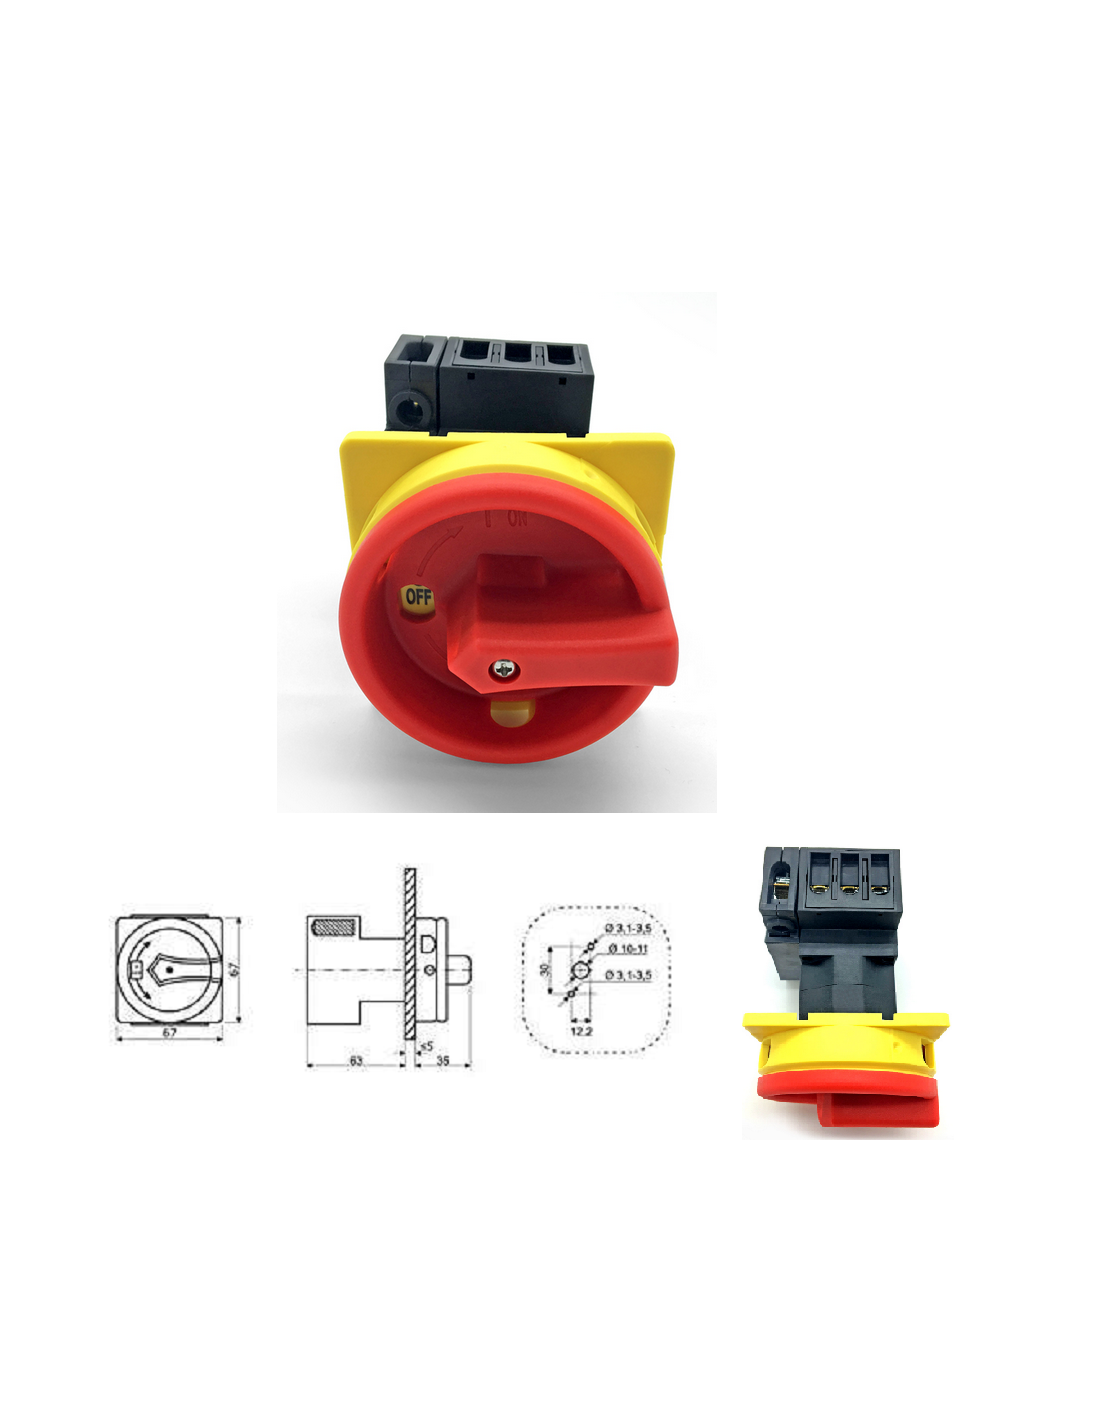 Interrupteur sectionneur rotatif cadenassable 25A - 4 P pour